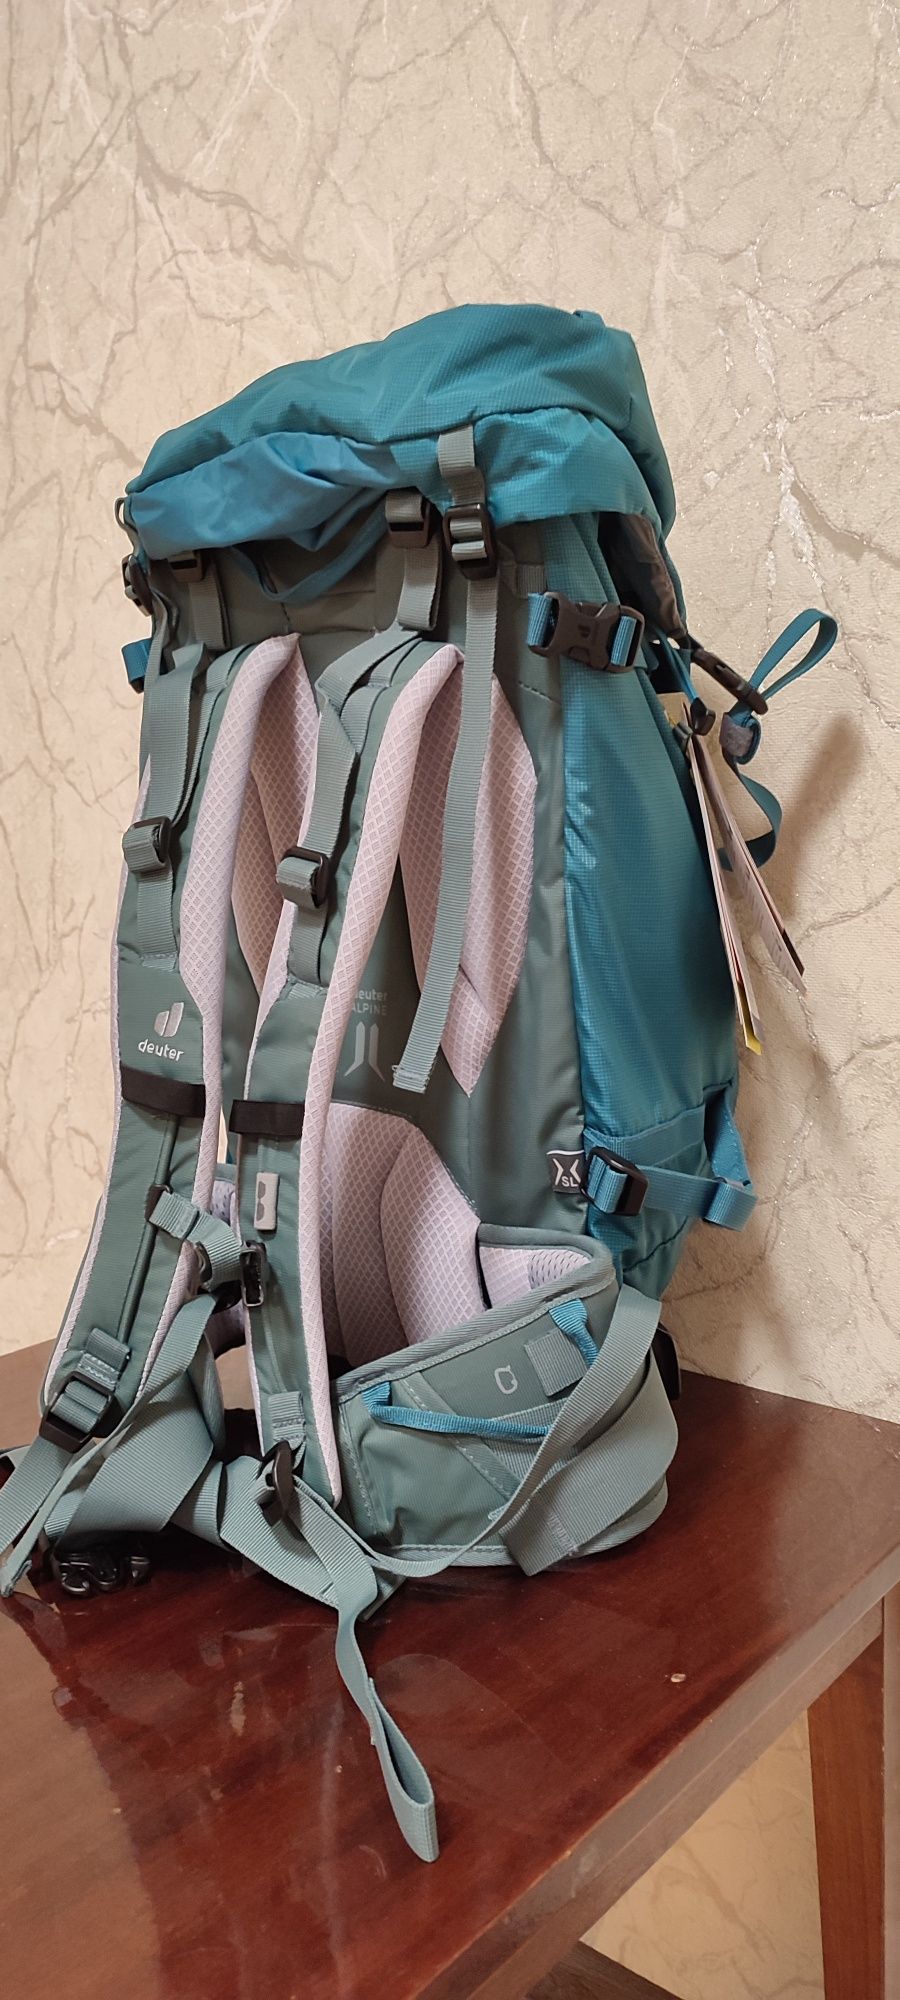 Продам туристический рюкзак deuter backpack guide 32+sl denim teal